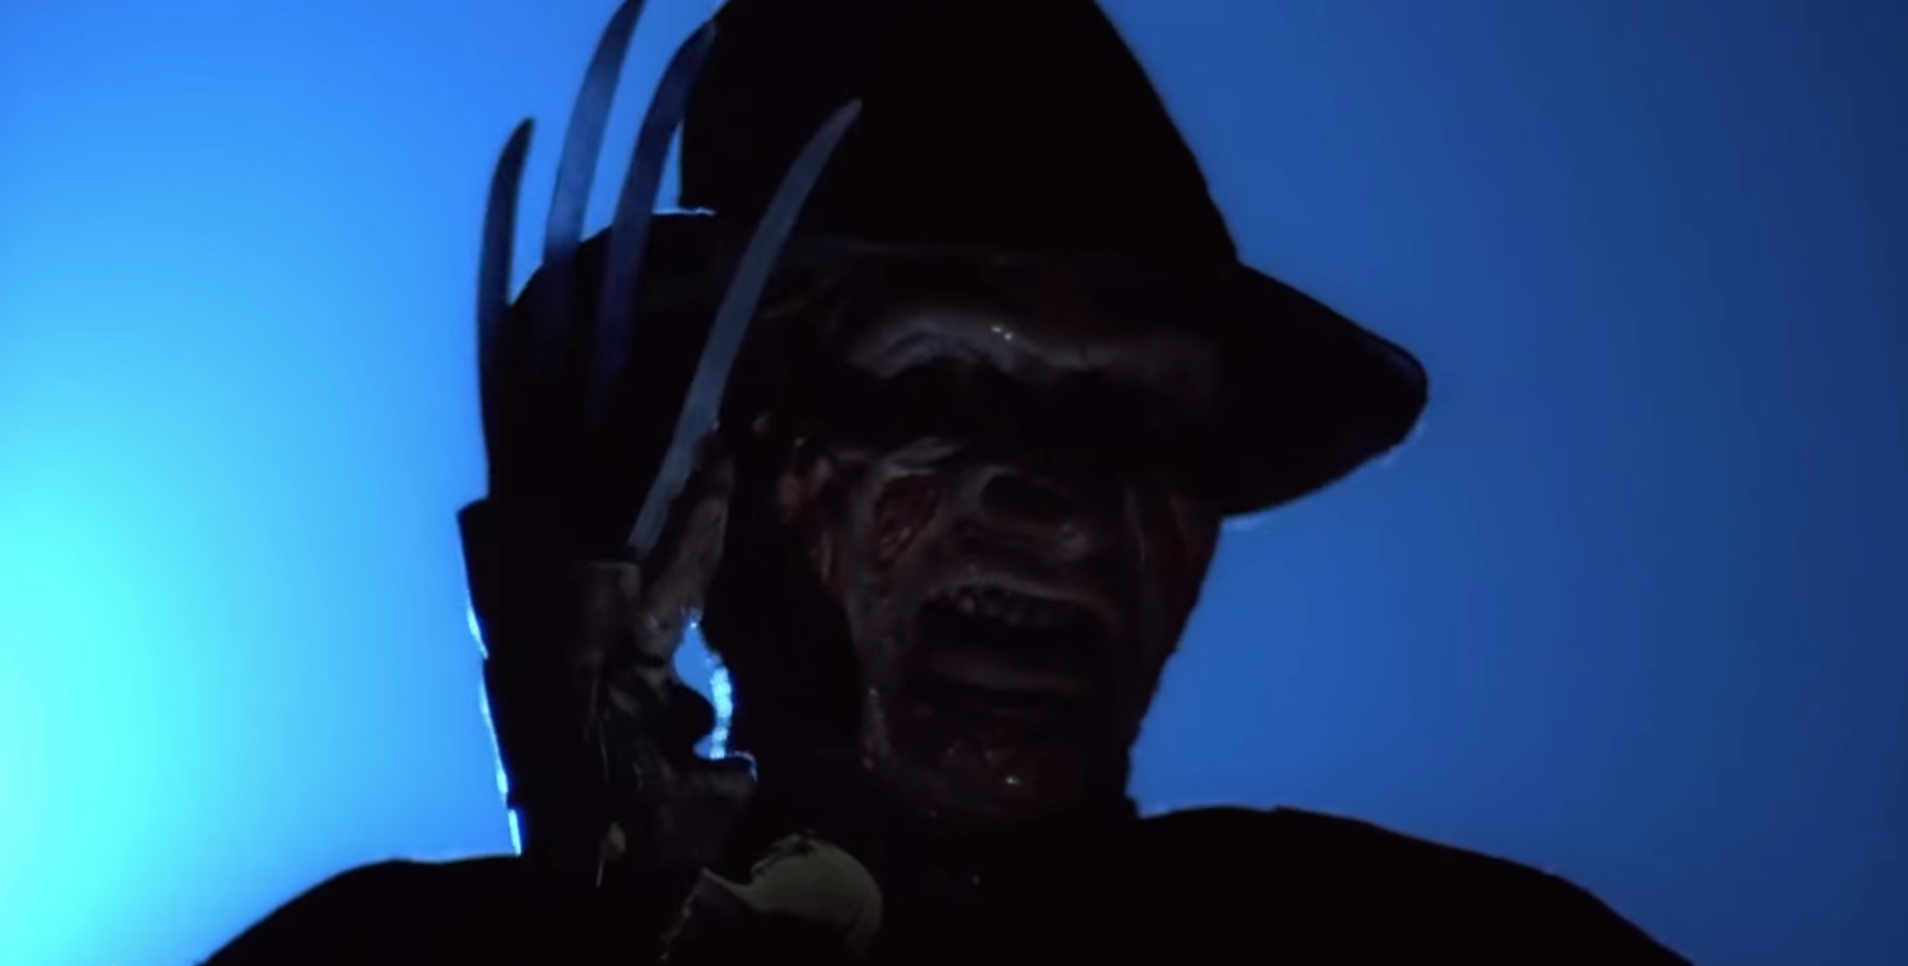 Freddy Krueger provocando em A Nightmare on Elm Street